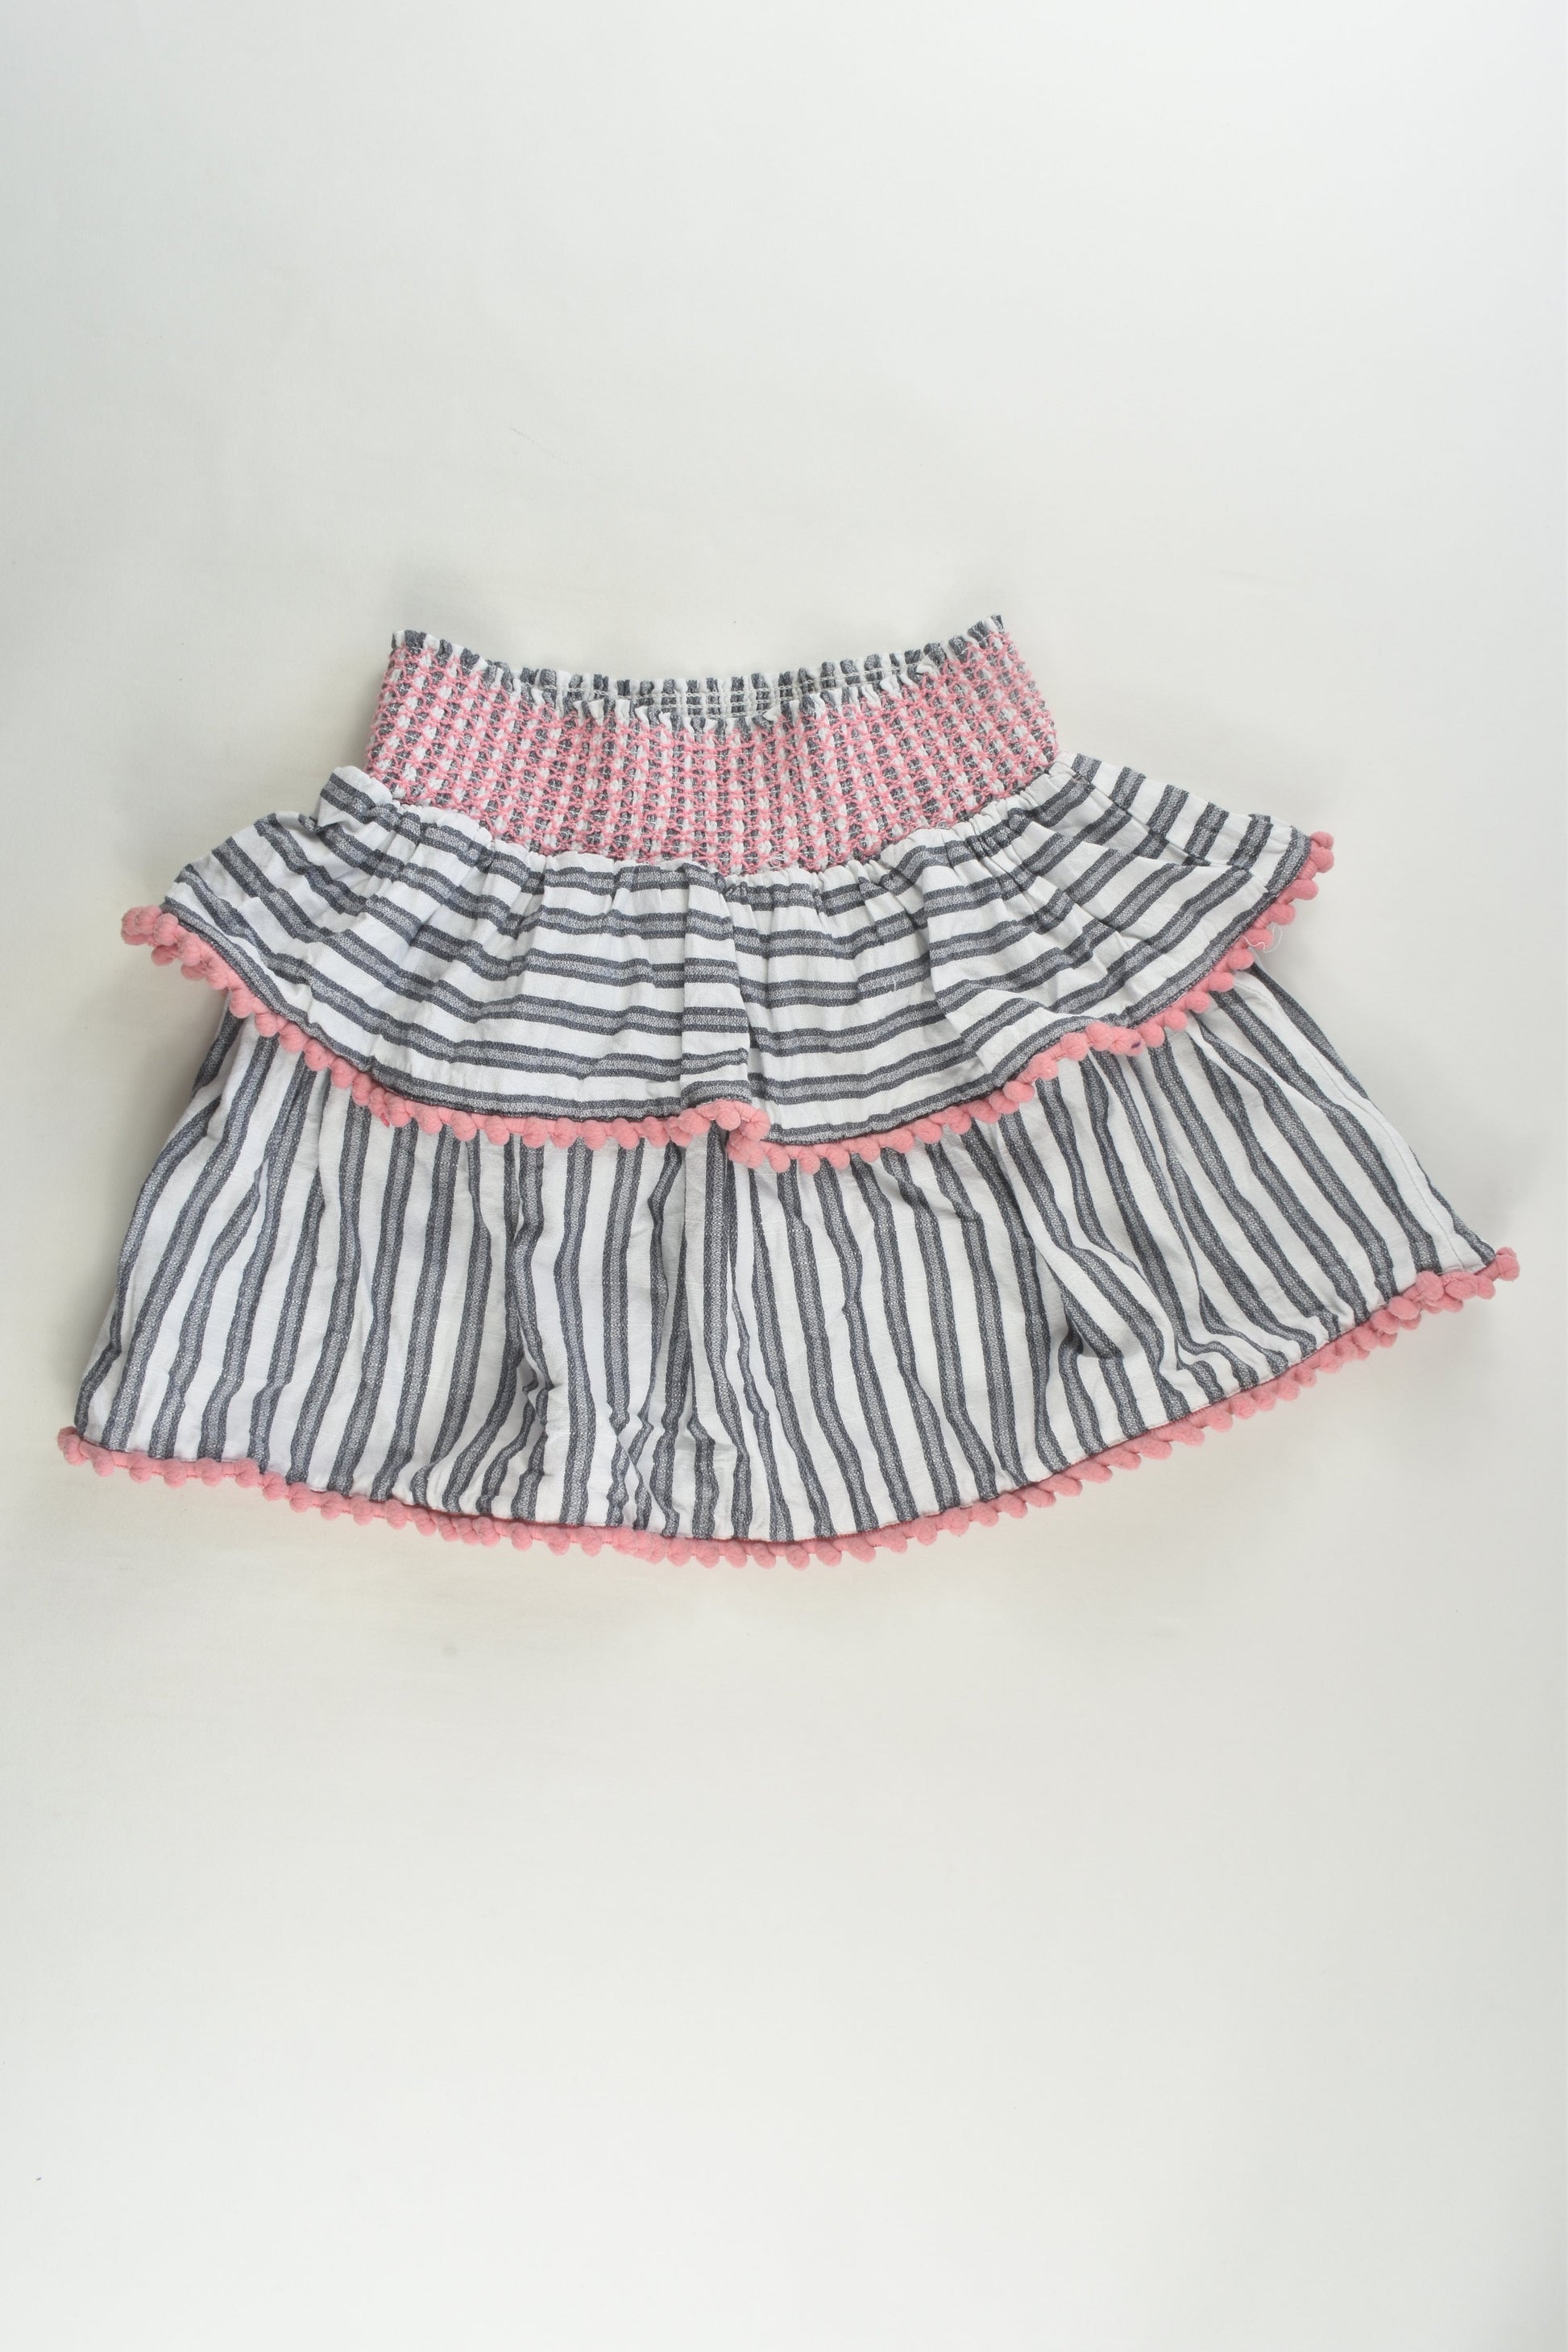 Cotton On Kids Size 9 Linen-feel Pom Pom Skirt